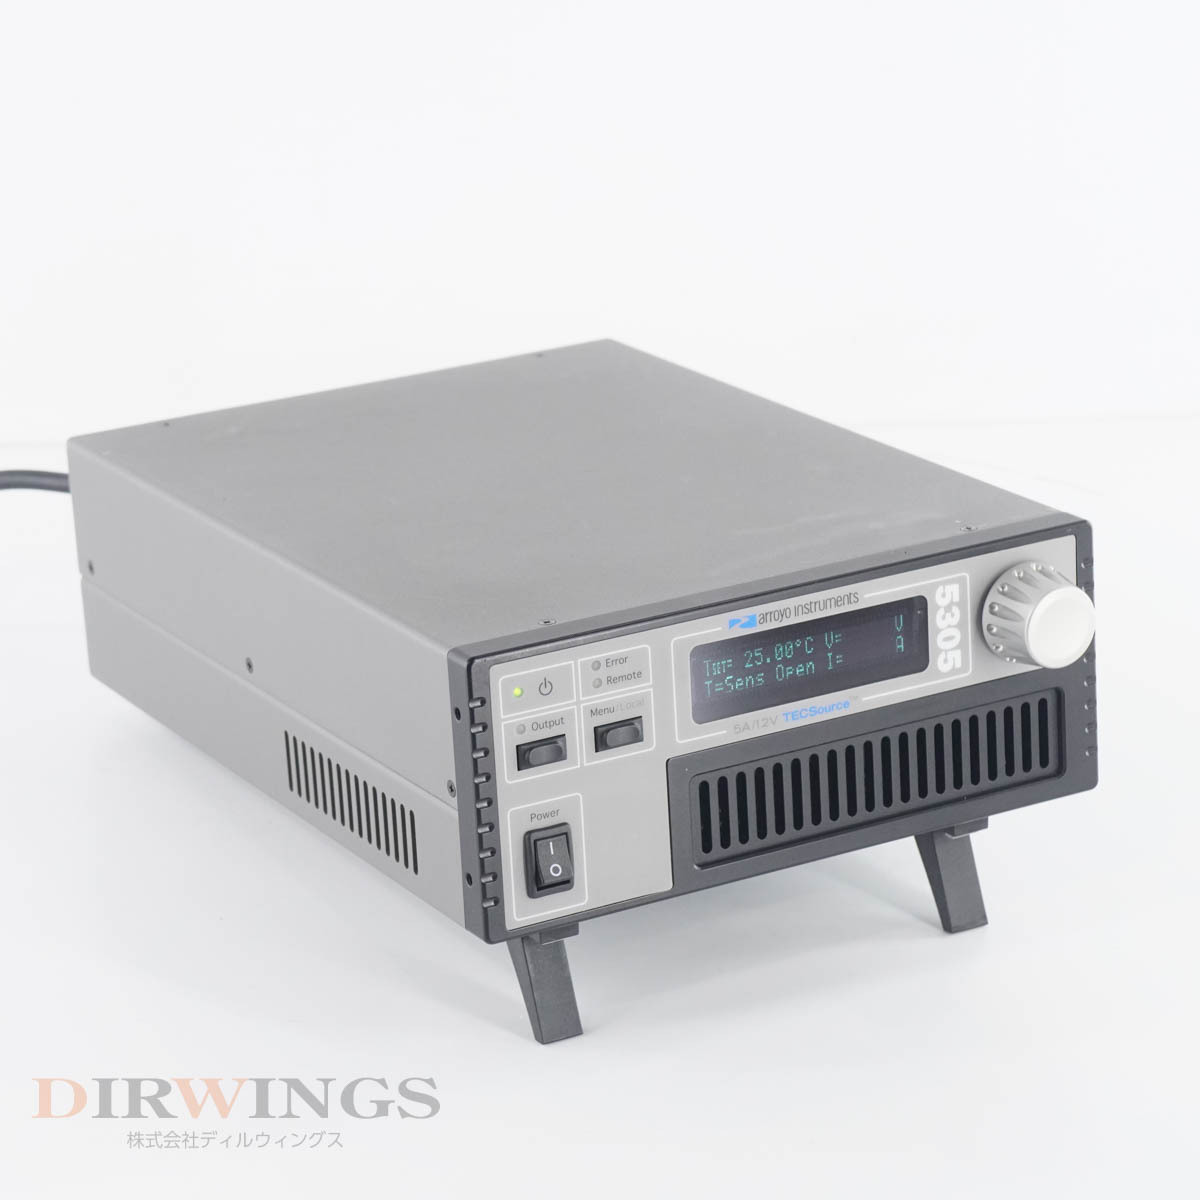 [DW] 8日保証 5305 Arroyo 5A/12V TECSource Temperature Controller 温度コントローラー[05791-0893]の画像1